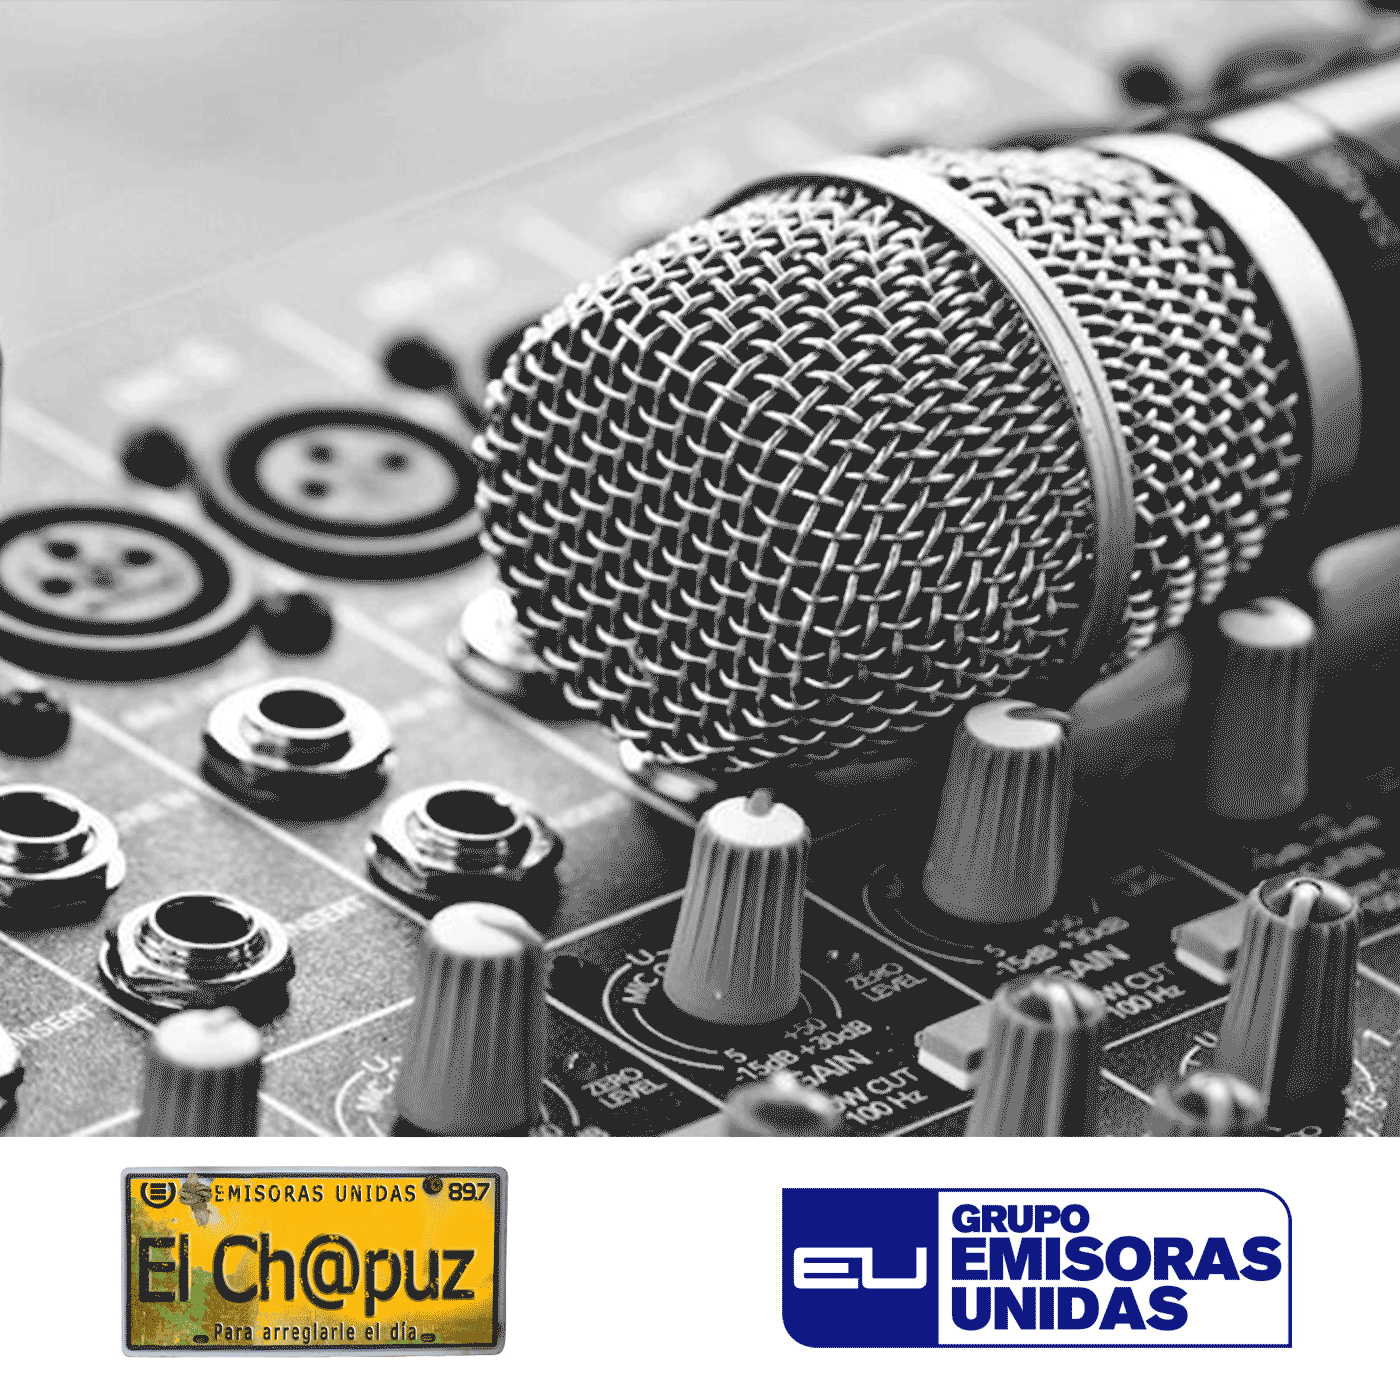 EC44 - El Chapuz - Emisoras unidas - #CumbiaDeLaJusticia